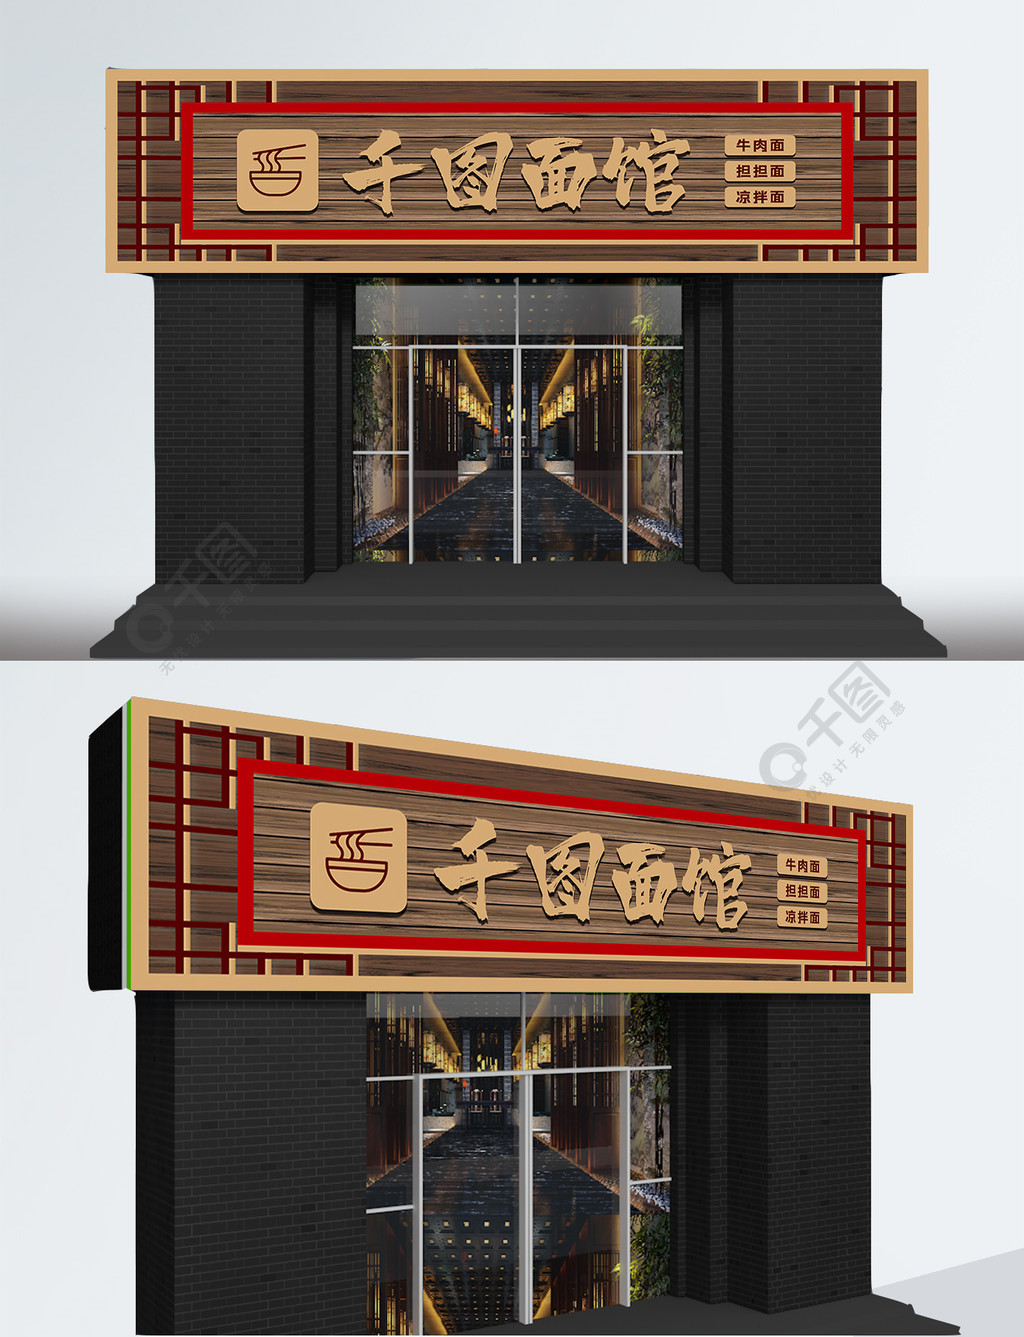 中国风面馆门头设计1年前发布